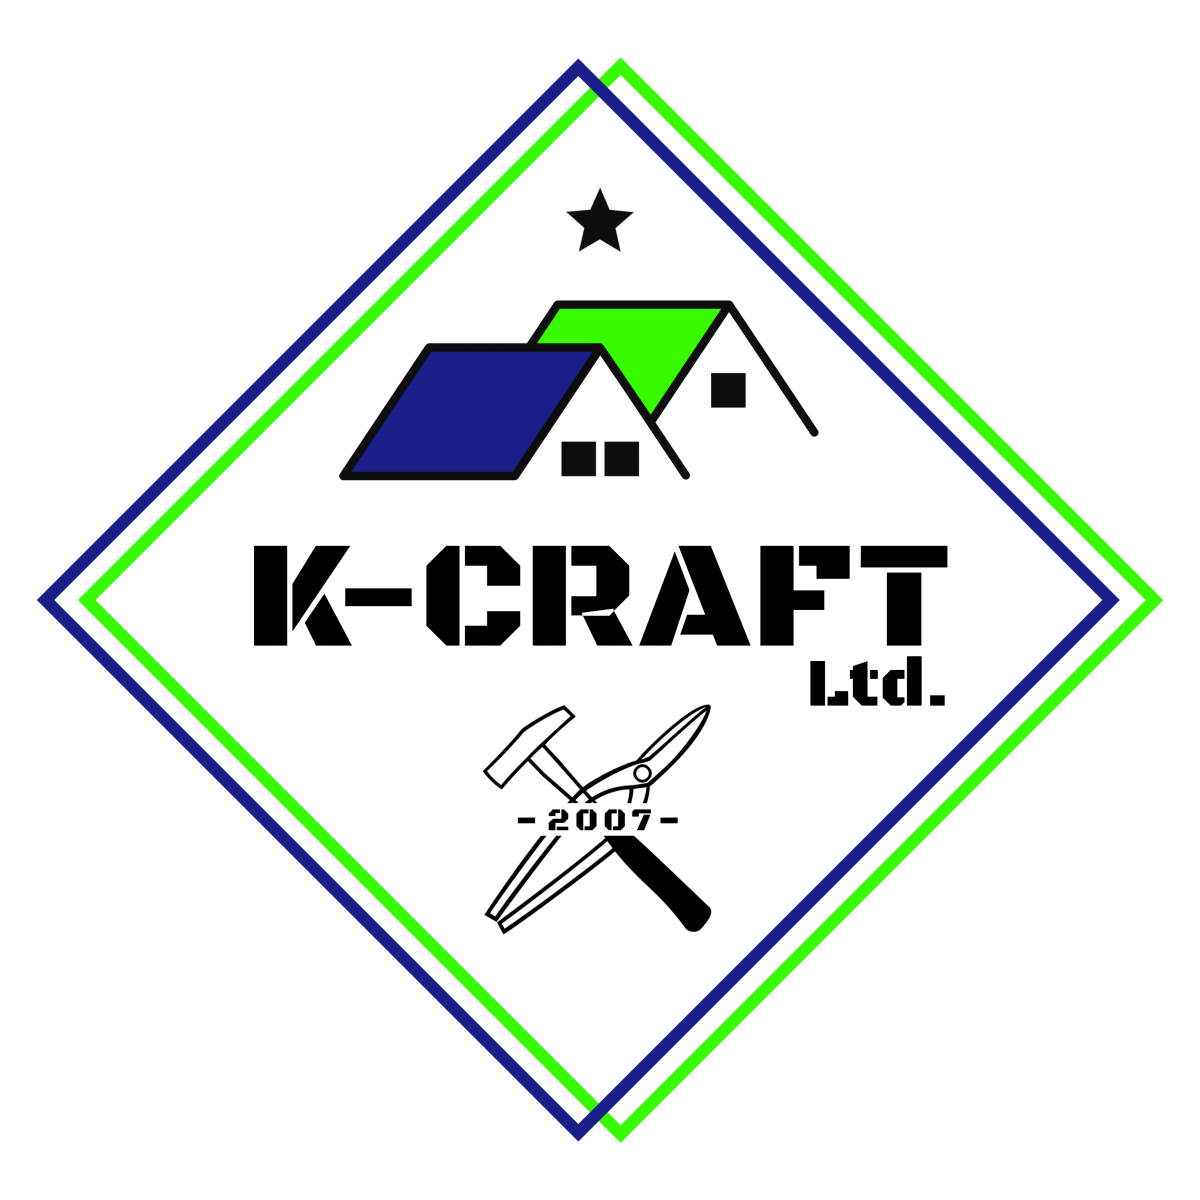 屋根外装内装リフォームなら有限会社K-CRAFT